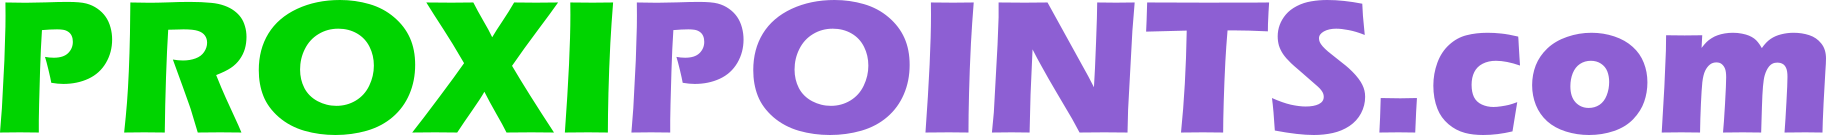 ProxiPoints.com Logo